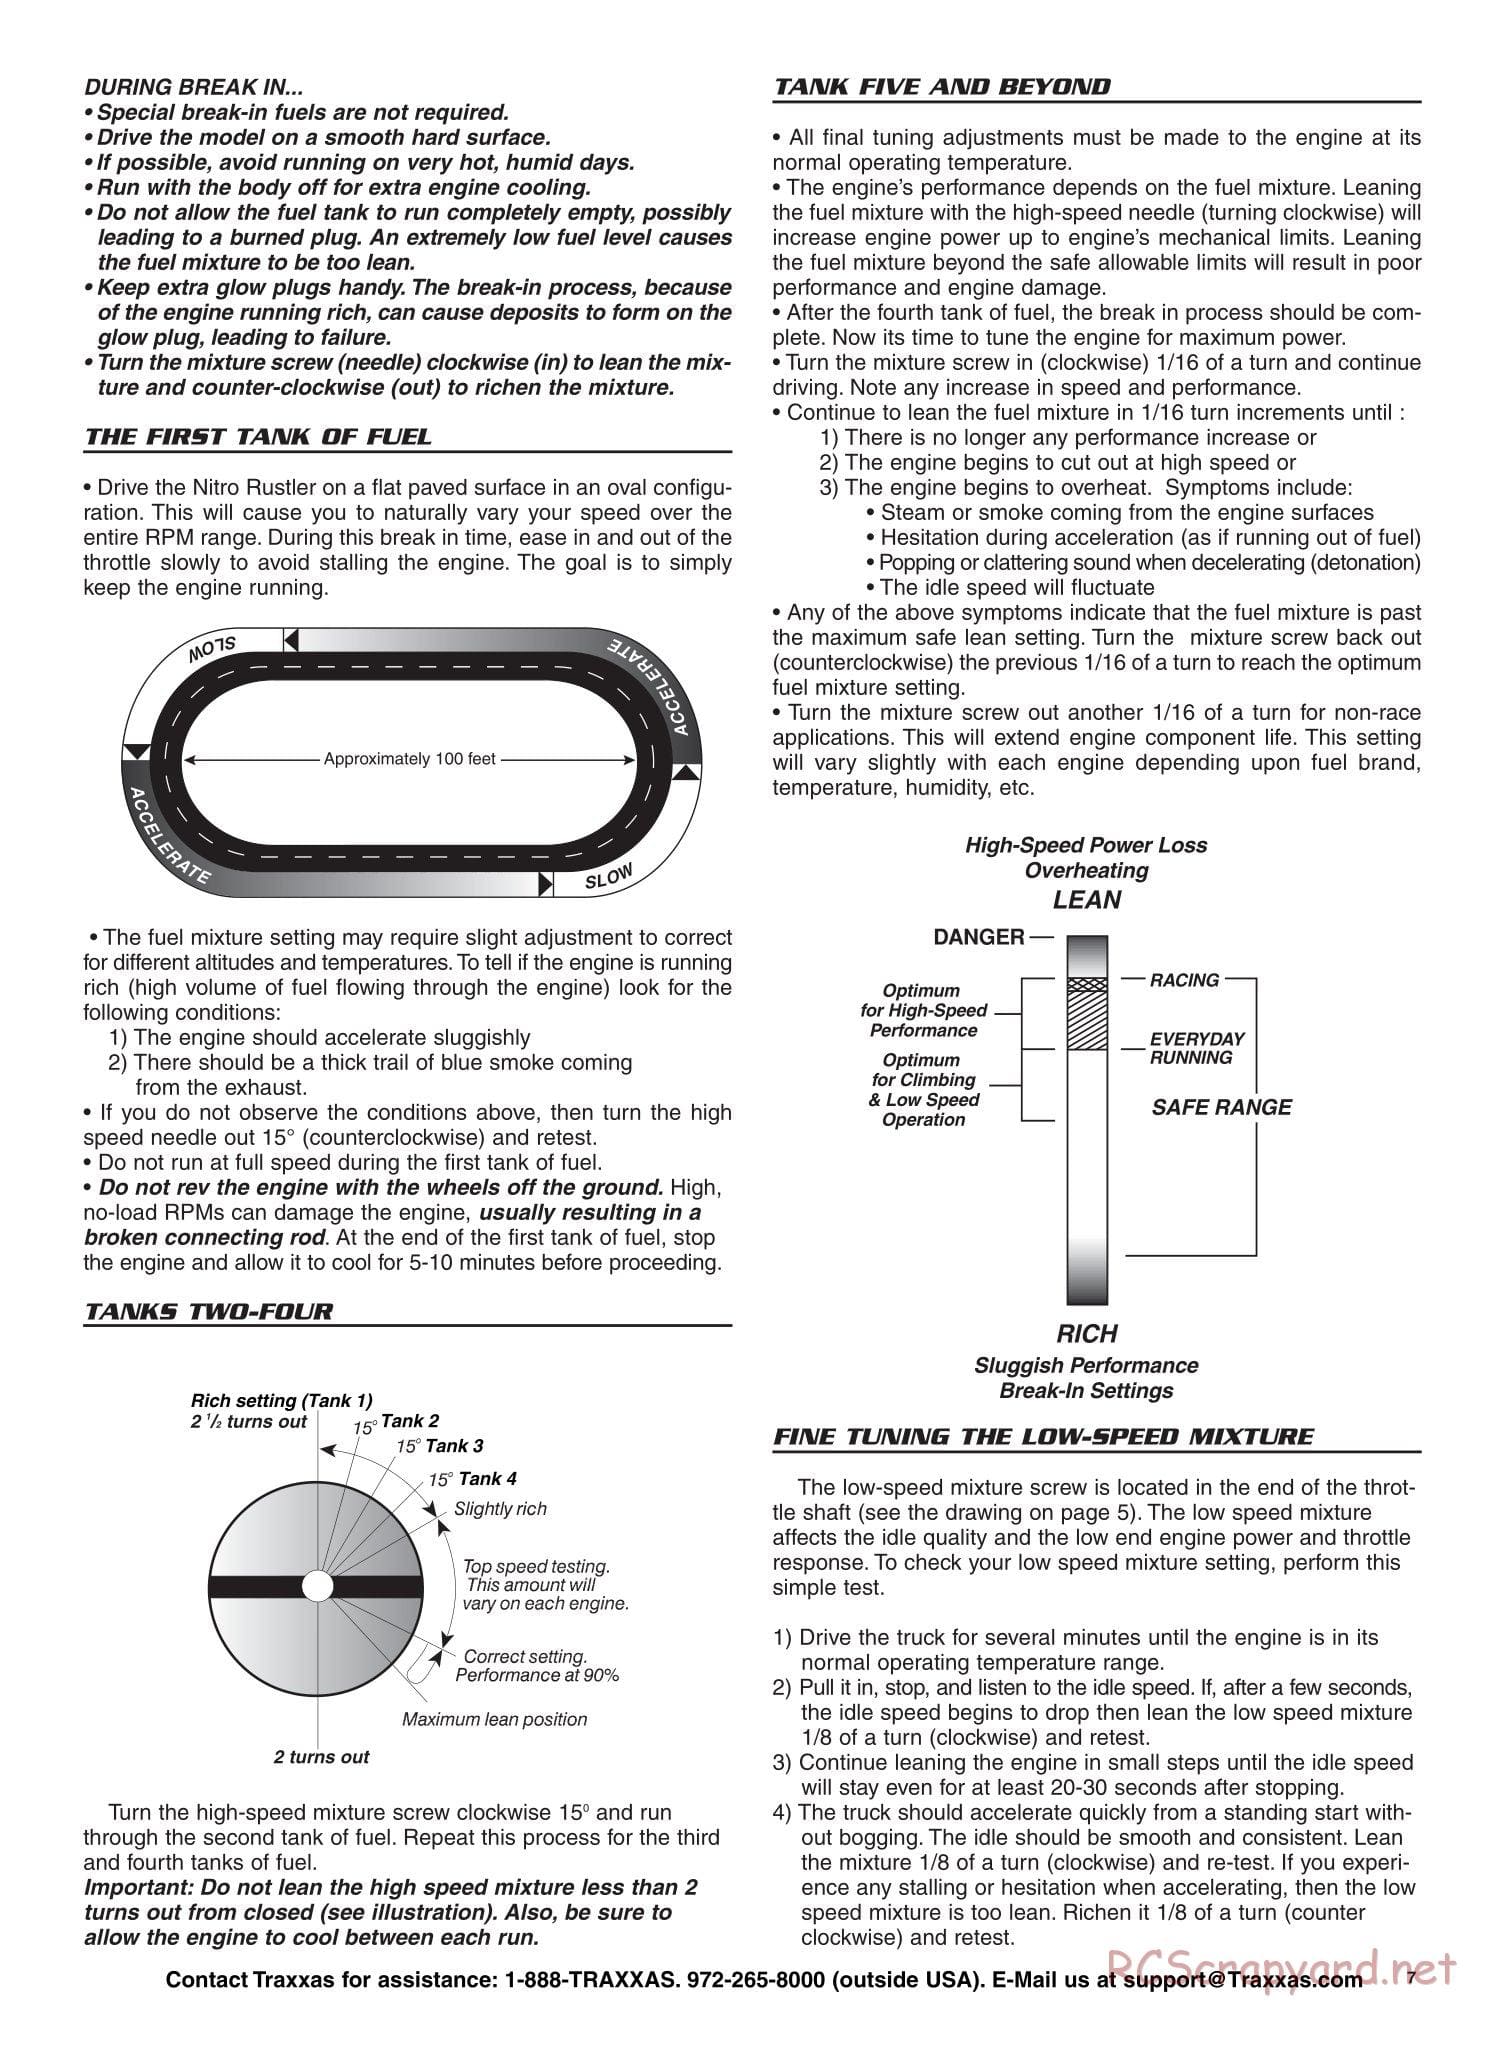 Traxxas - Nitro Rustler - Manual - Page 7